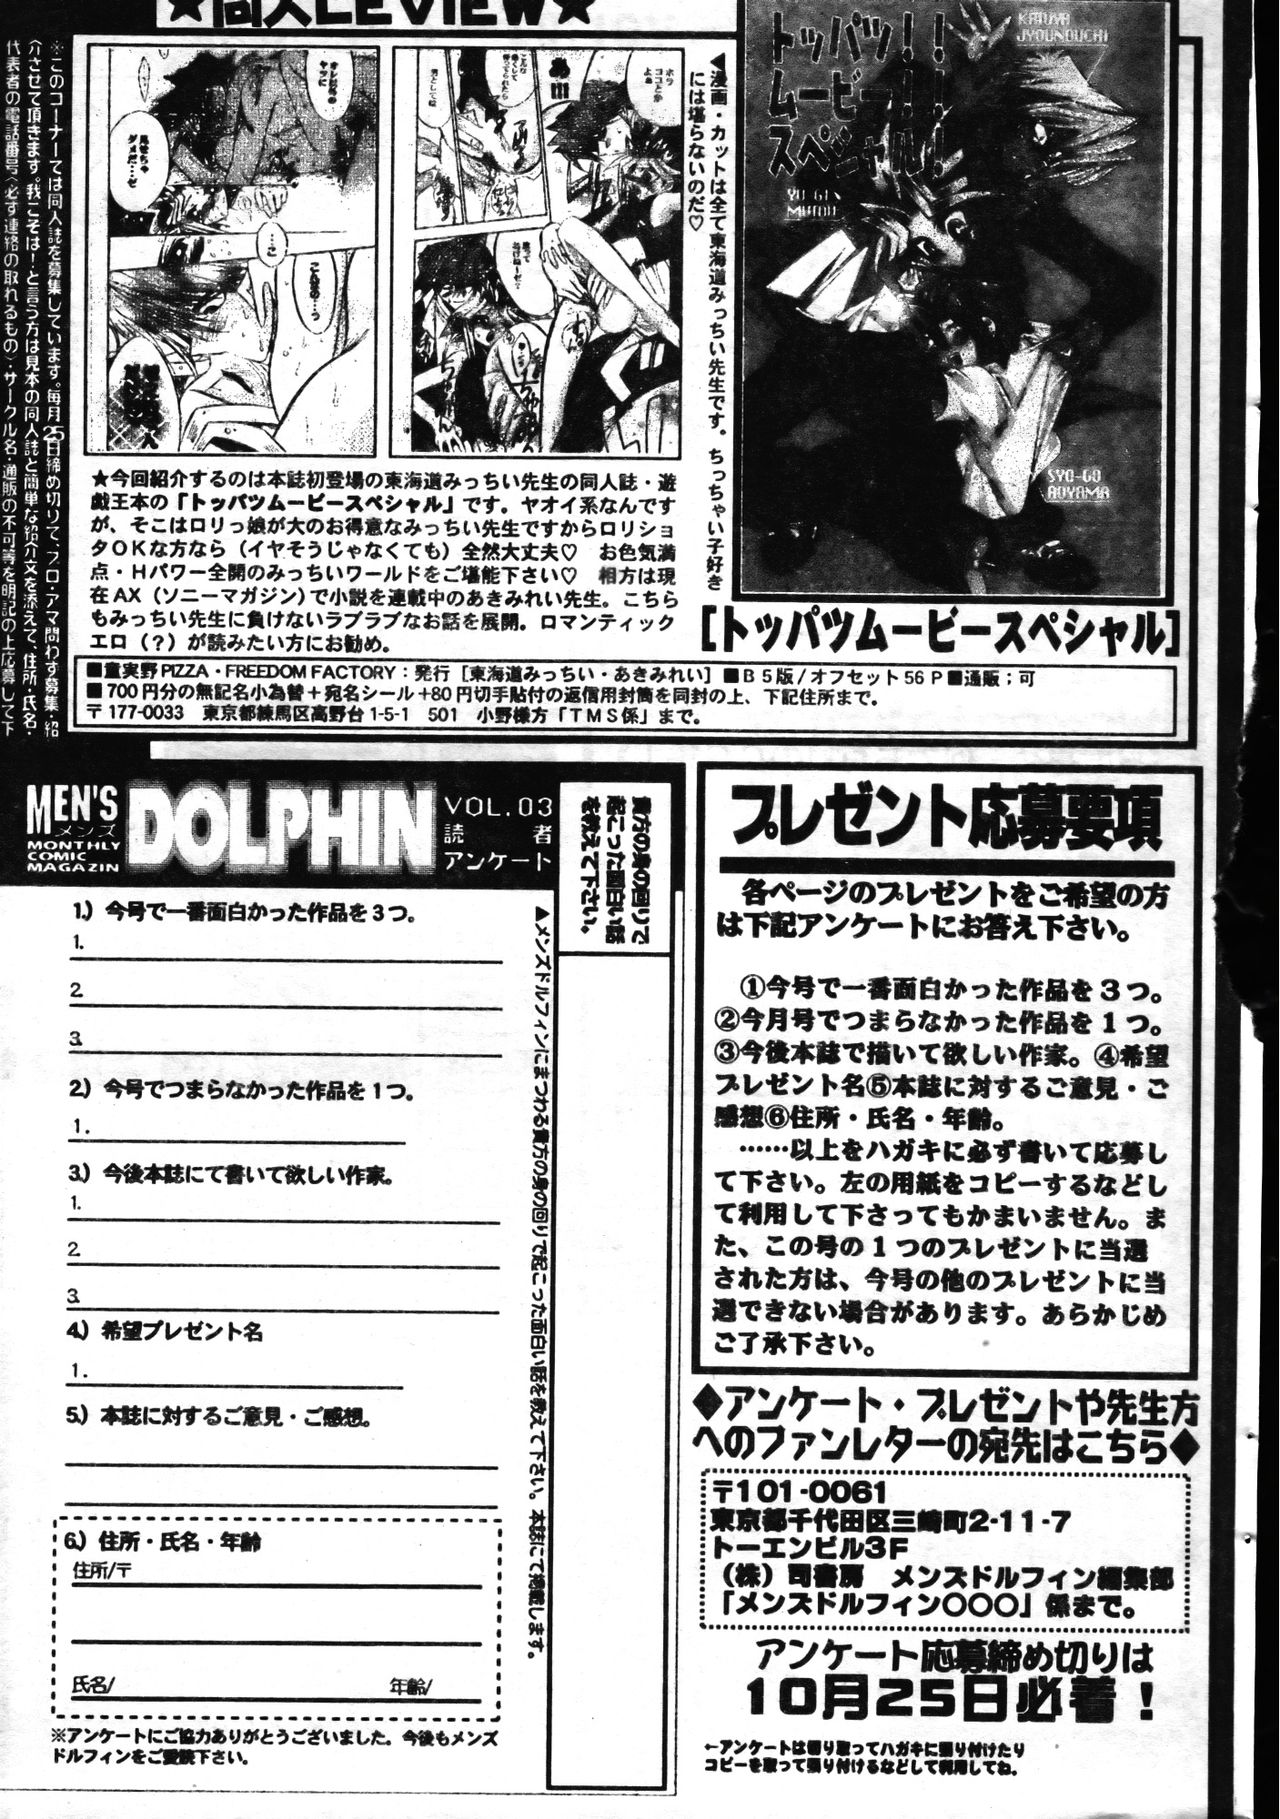 Men's Dolphin 1999-11-01 Vol.03 メンズドルフィン1999年11月1日Vol.03